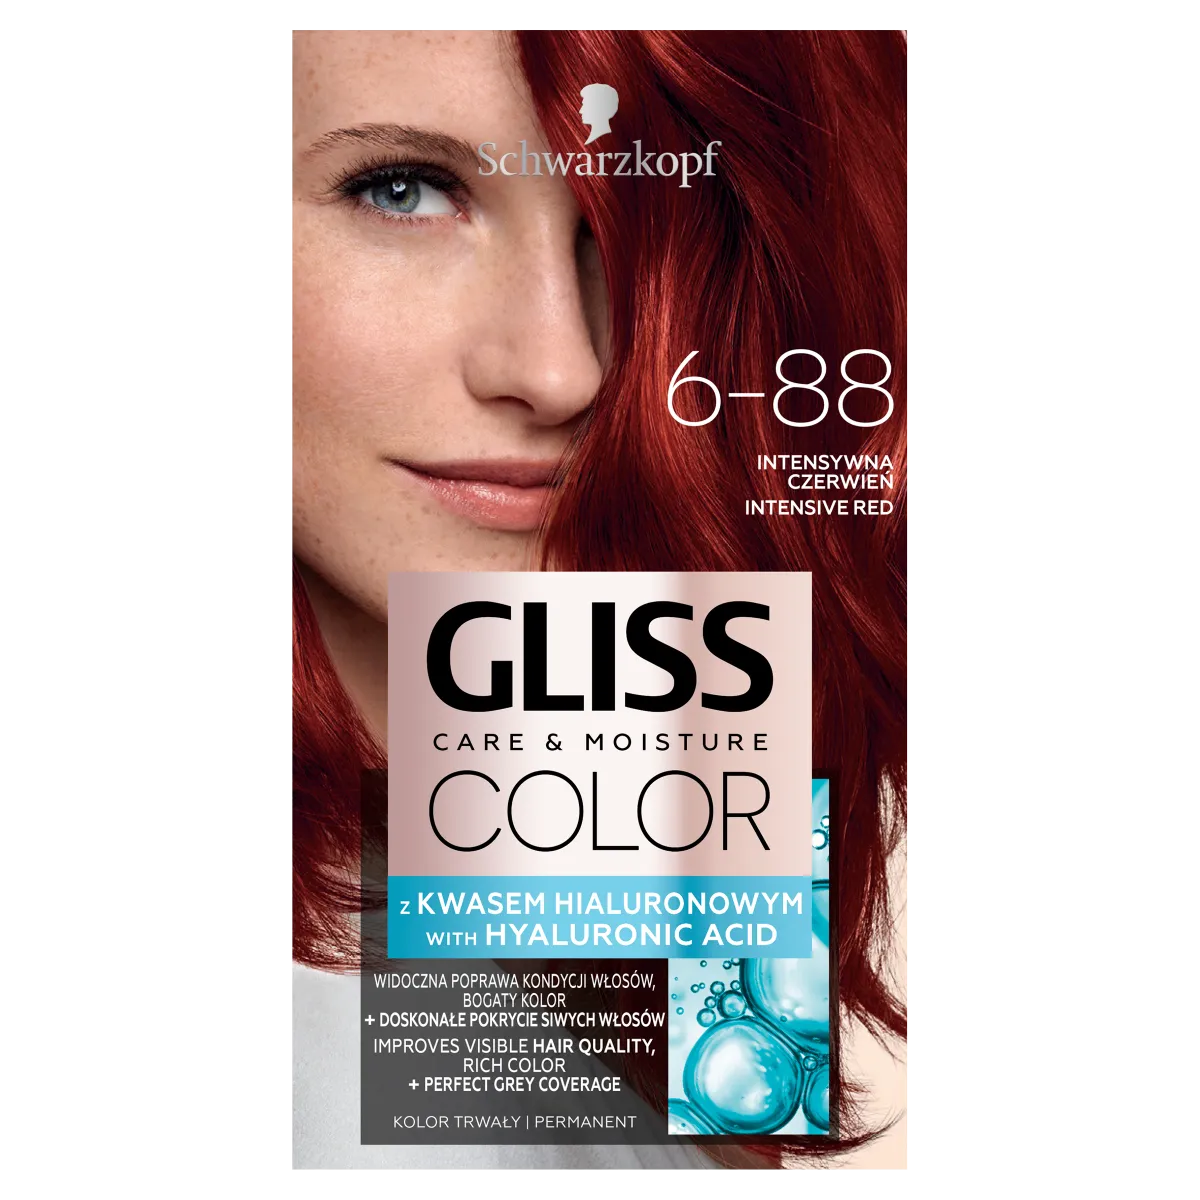 Schwarzkopf Gliss Color Farba do włosów nr 6-88 Intensywna czerwień, 1 szt.